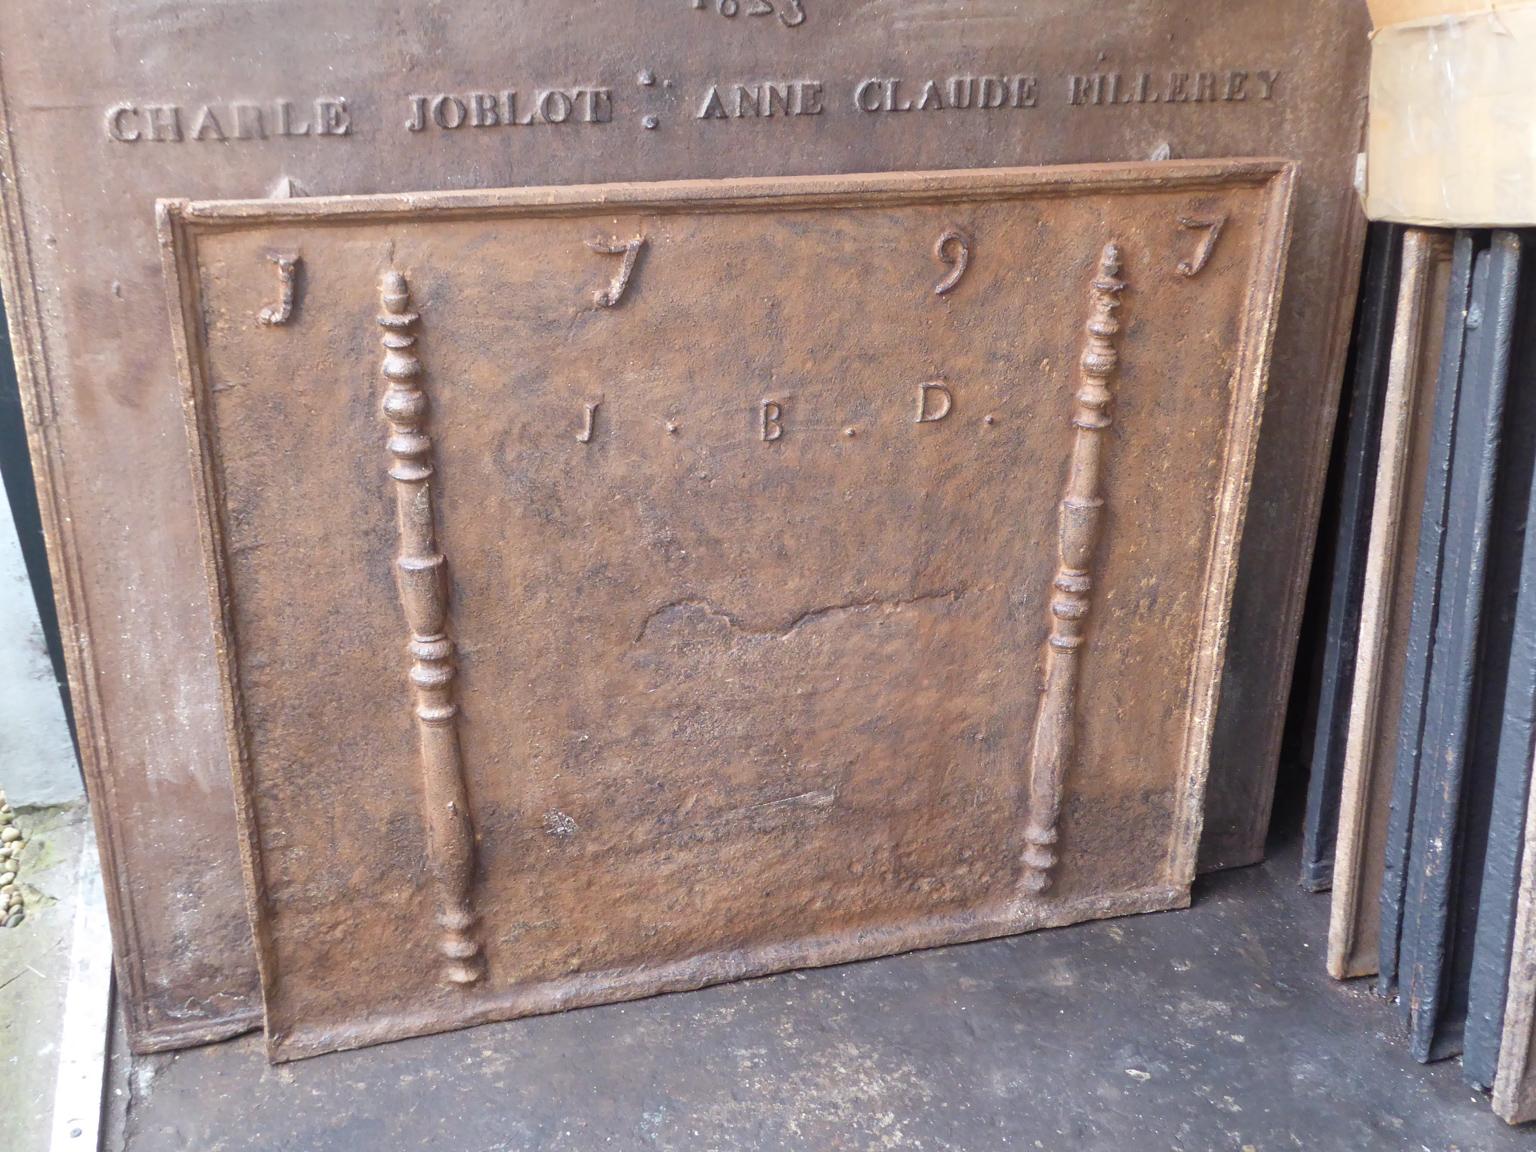 französischer Louis XV-Kamin aus dem 18. Jahrhundert. Das Herstellungsdatum 1797 ist in den Feuerboden eingegossen. Die Säulen verweisen auf die Keule des Herkules und symbolisieren Stärke und das Unbekannte.

Die Feuerrückwand ist aus Gusseisen